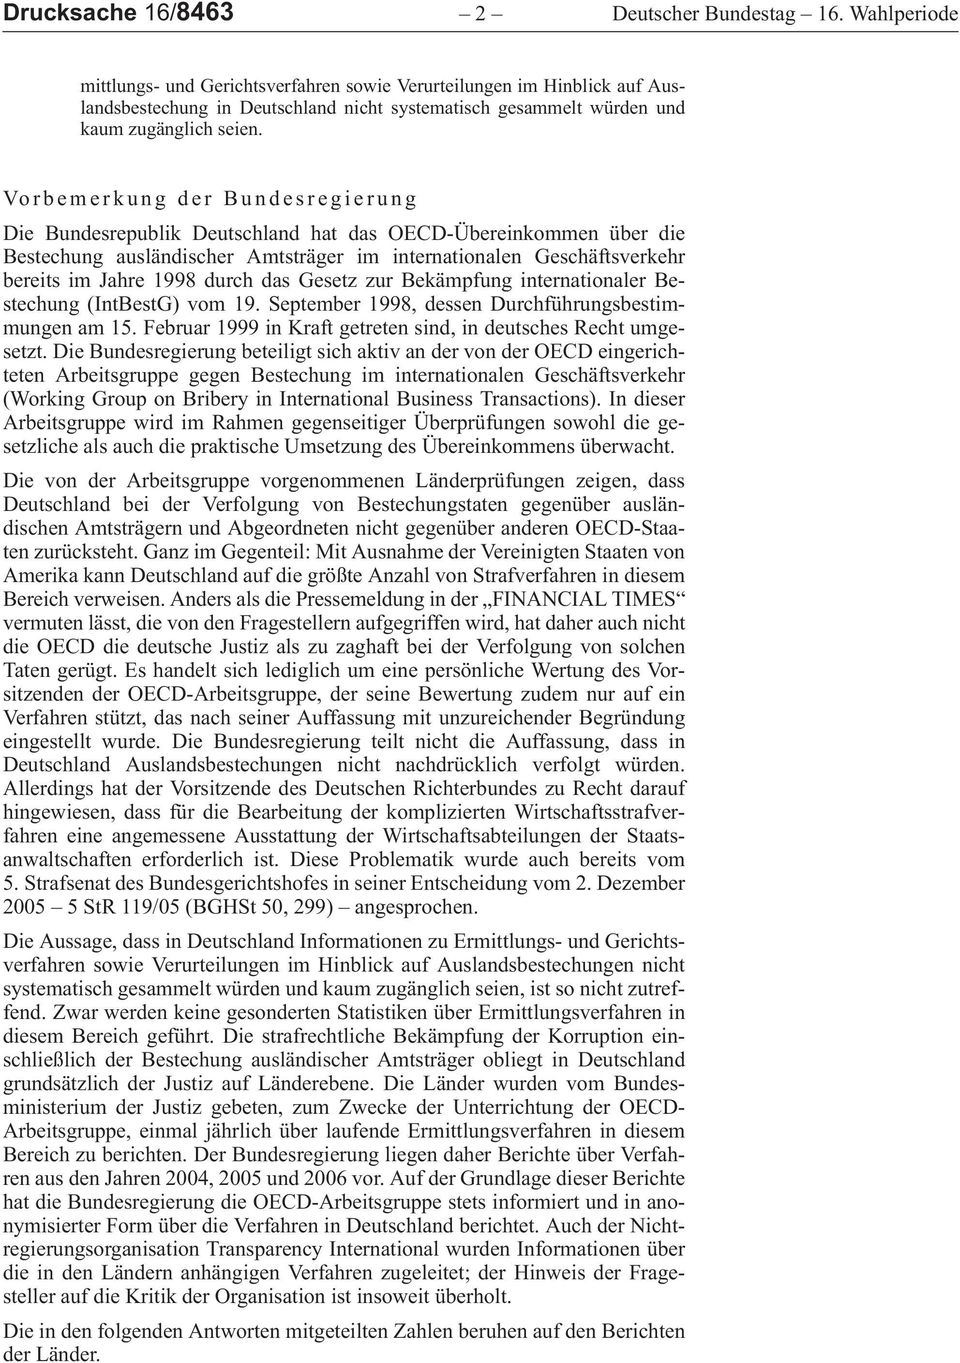 Vorbemerkung der Bundesregierung DieBundesrepublikDeutschlandhatdasOECD-Übereinkommenüberdie BestechungausländischerAmtsträgeriminternationalenGeschäftsverkehr